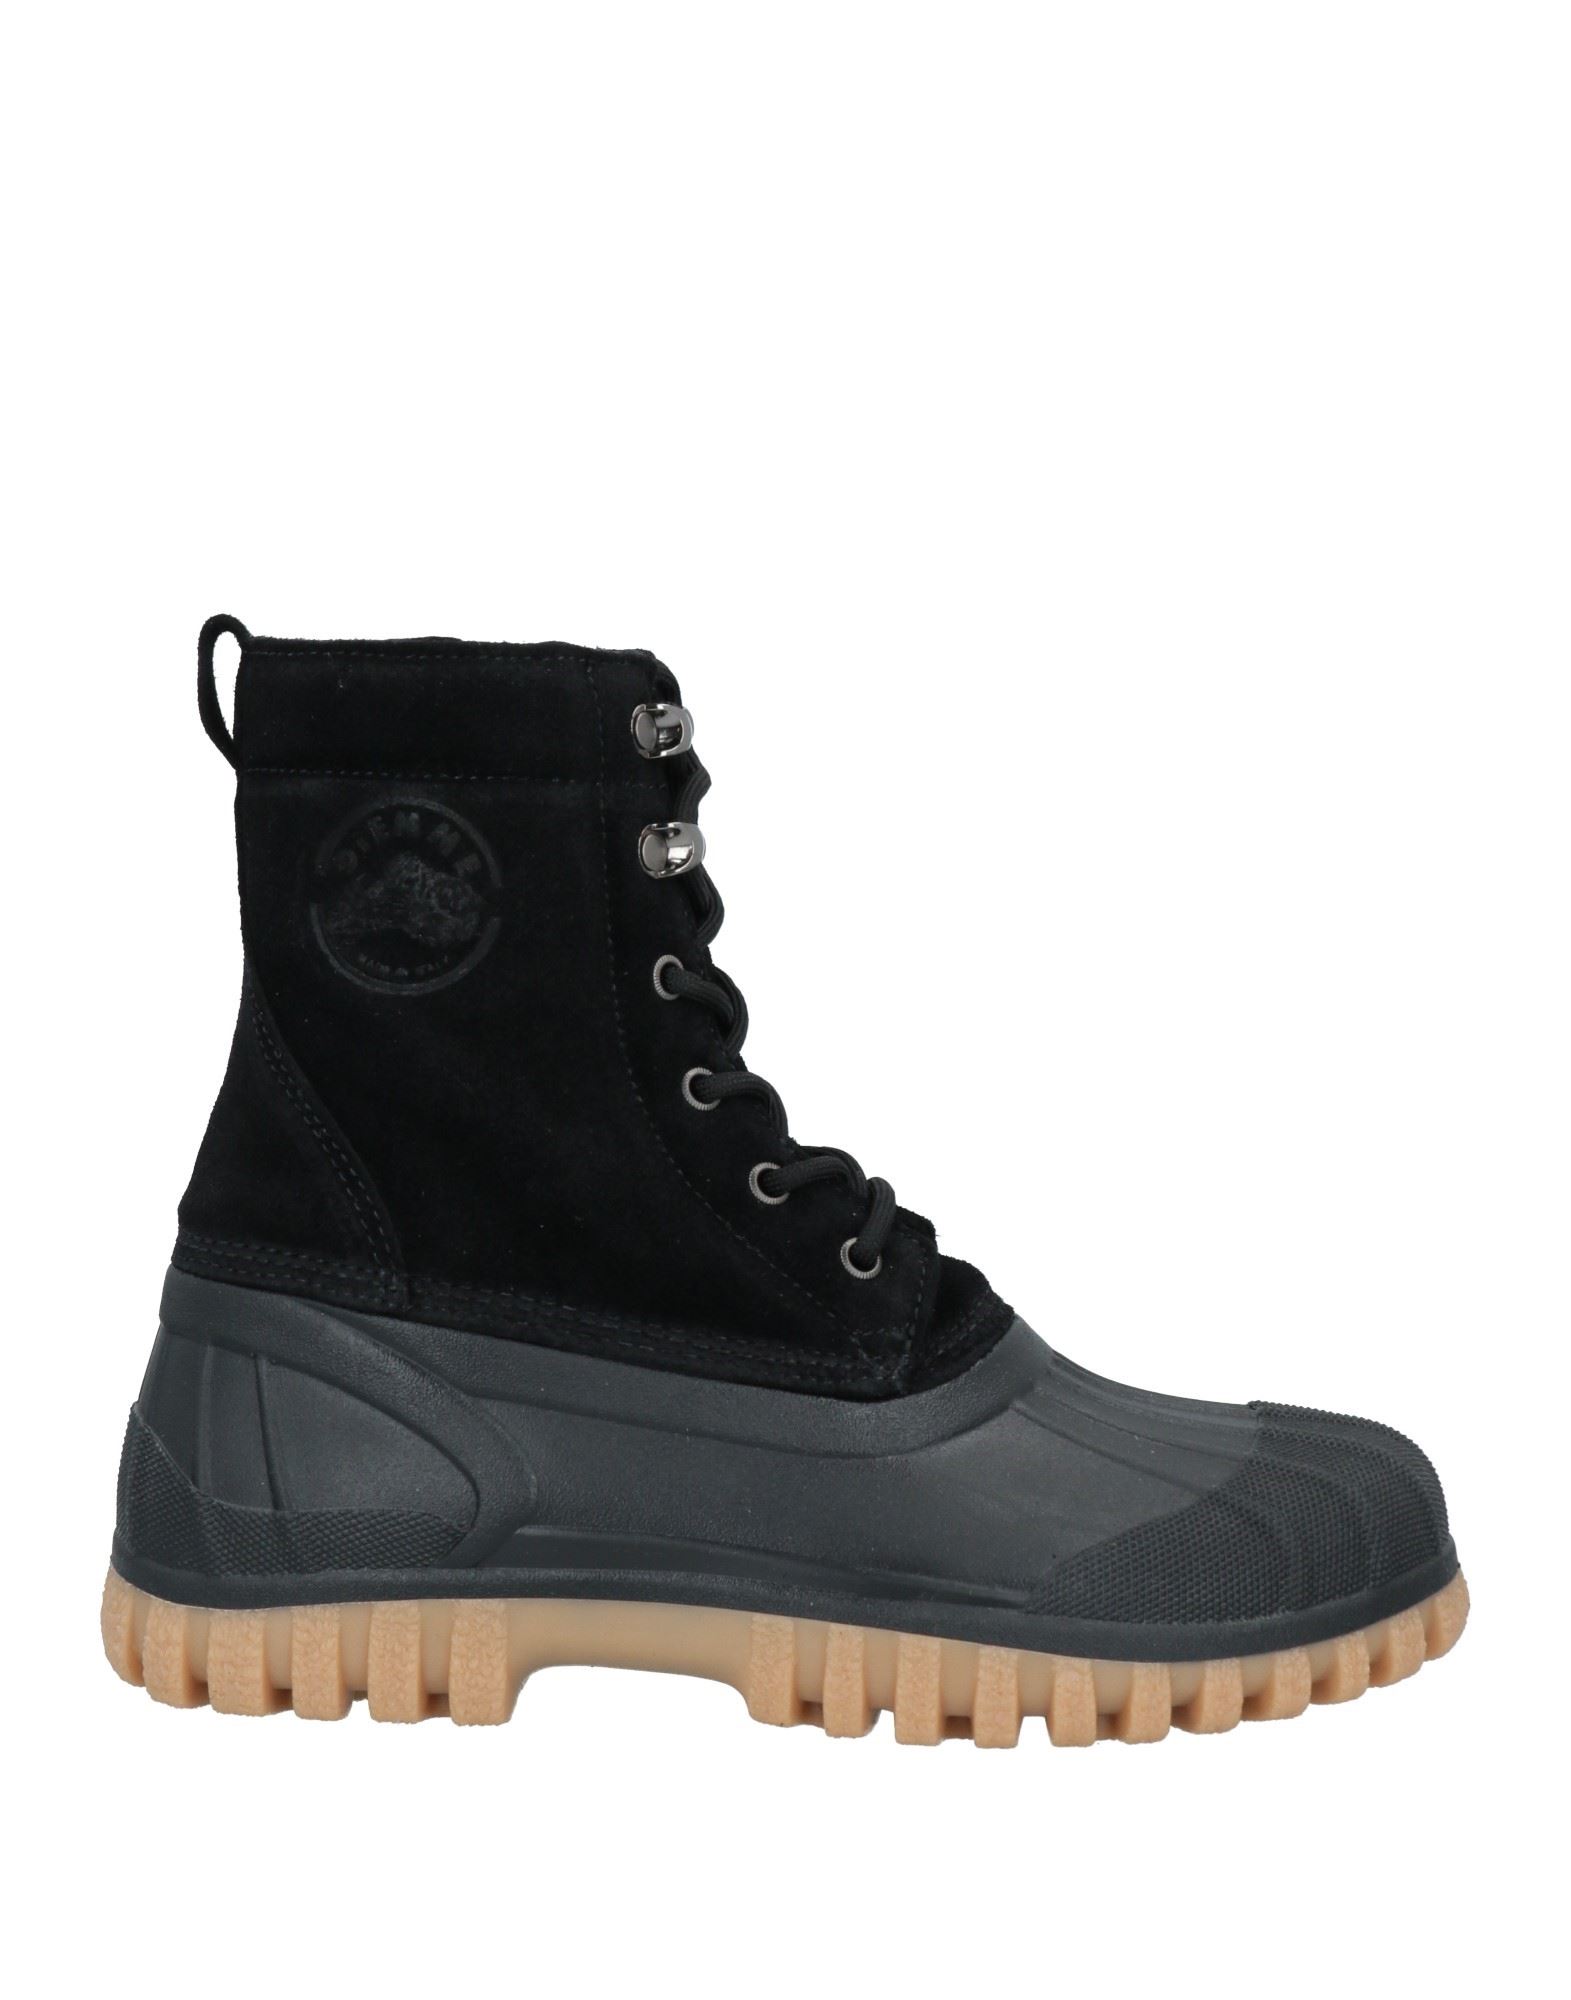 Shop Diemme Woman Ankle Boots Black Size 8 Leather, Rubber